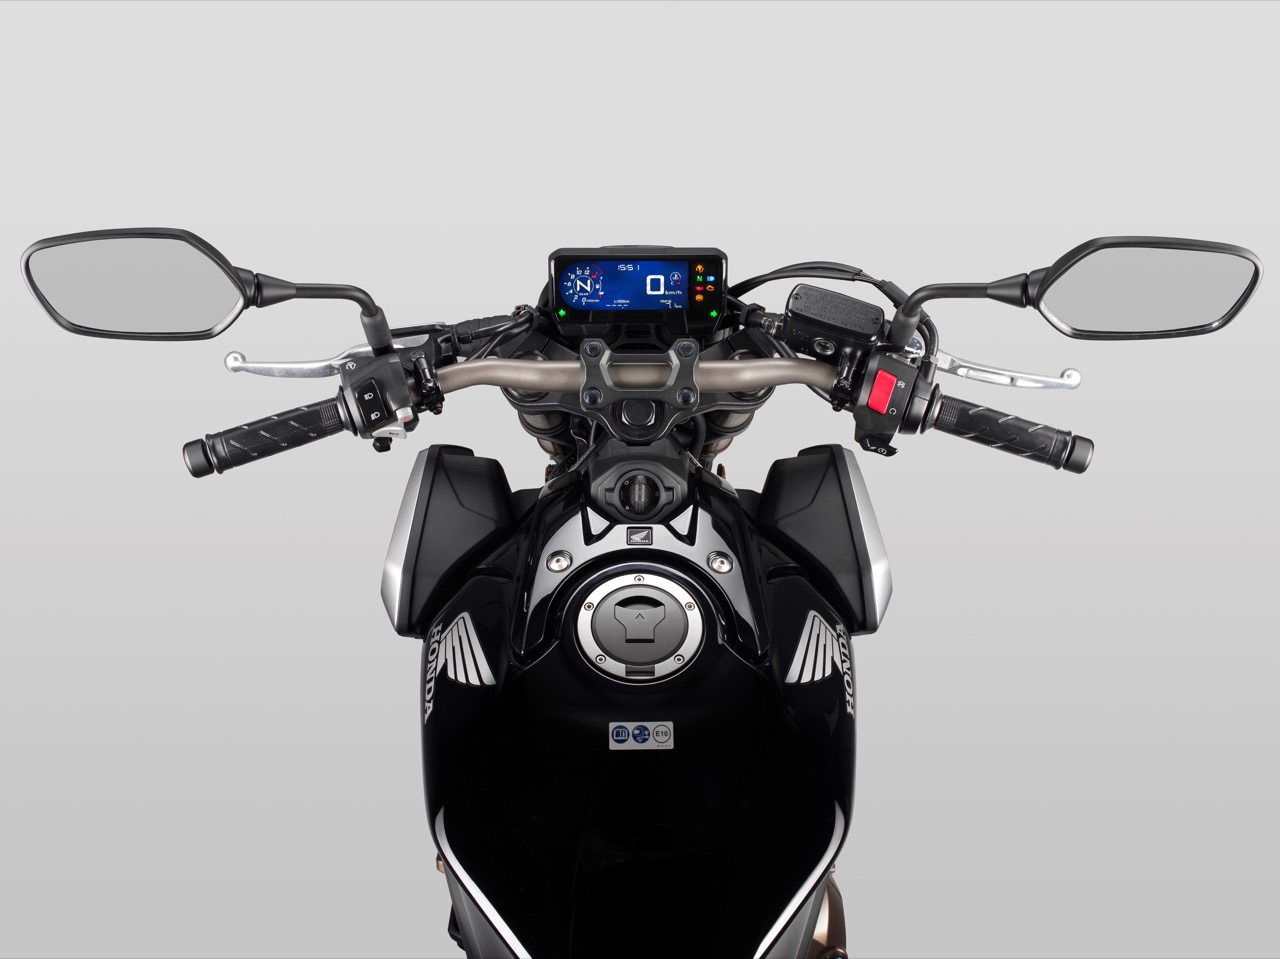 Honda CB650R 2019 - foto